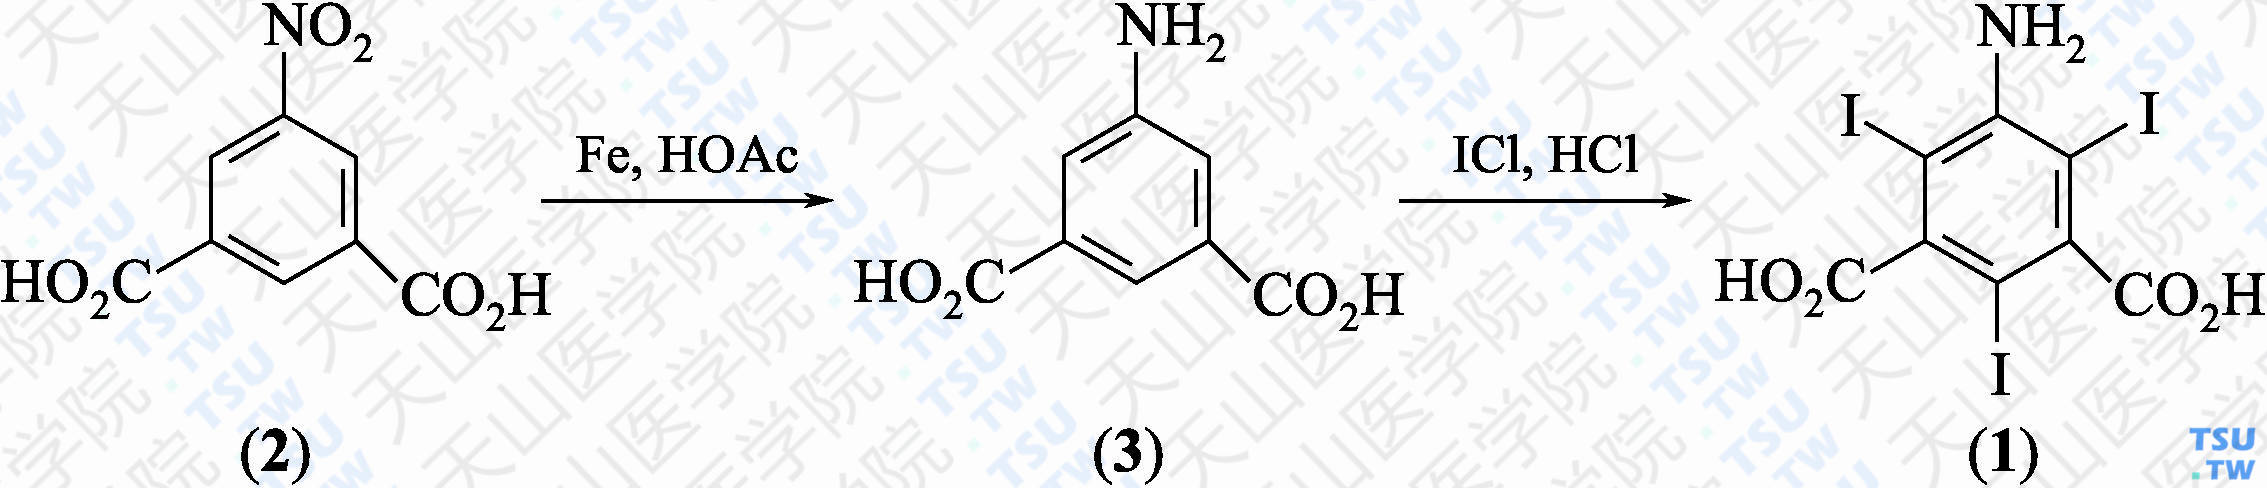 5-氨基-2，4，6-三碘间苯二甲酸（分子式：C<sub>8</sub>H<sub>4</sub>I<sub>3</sub>NO<sub>4</sub>）的合成方法路线及其结构式